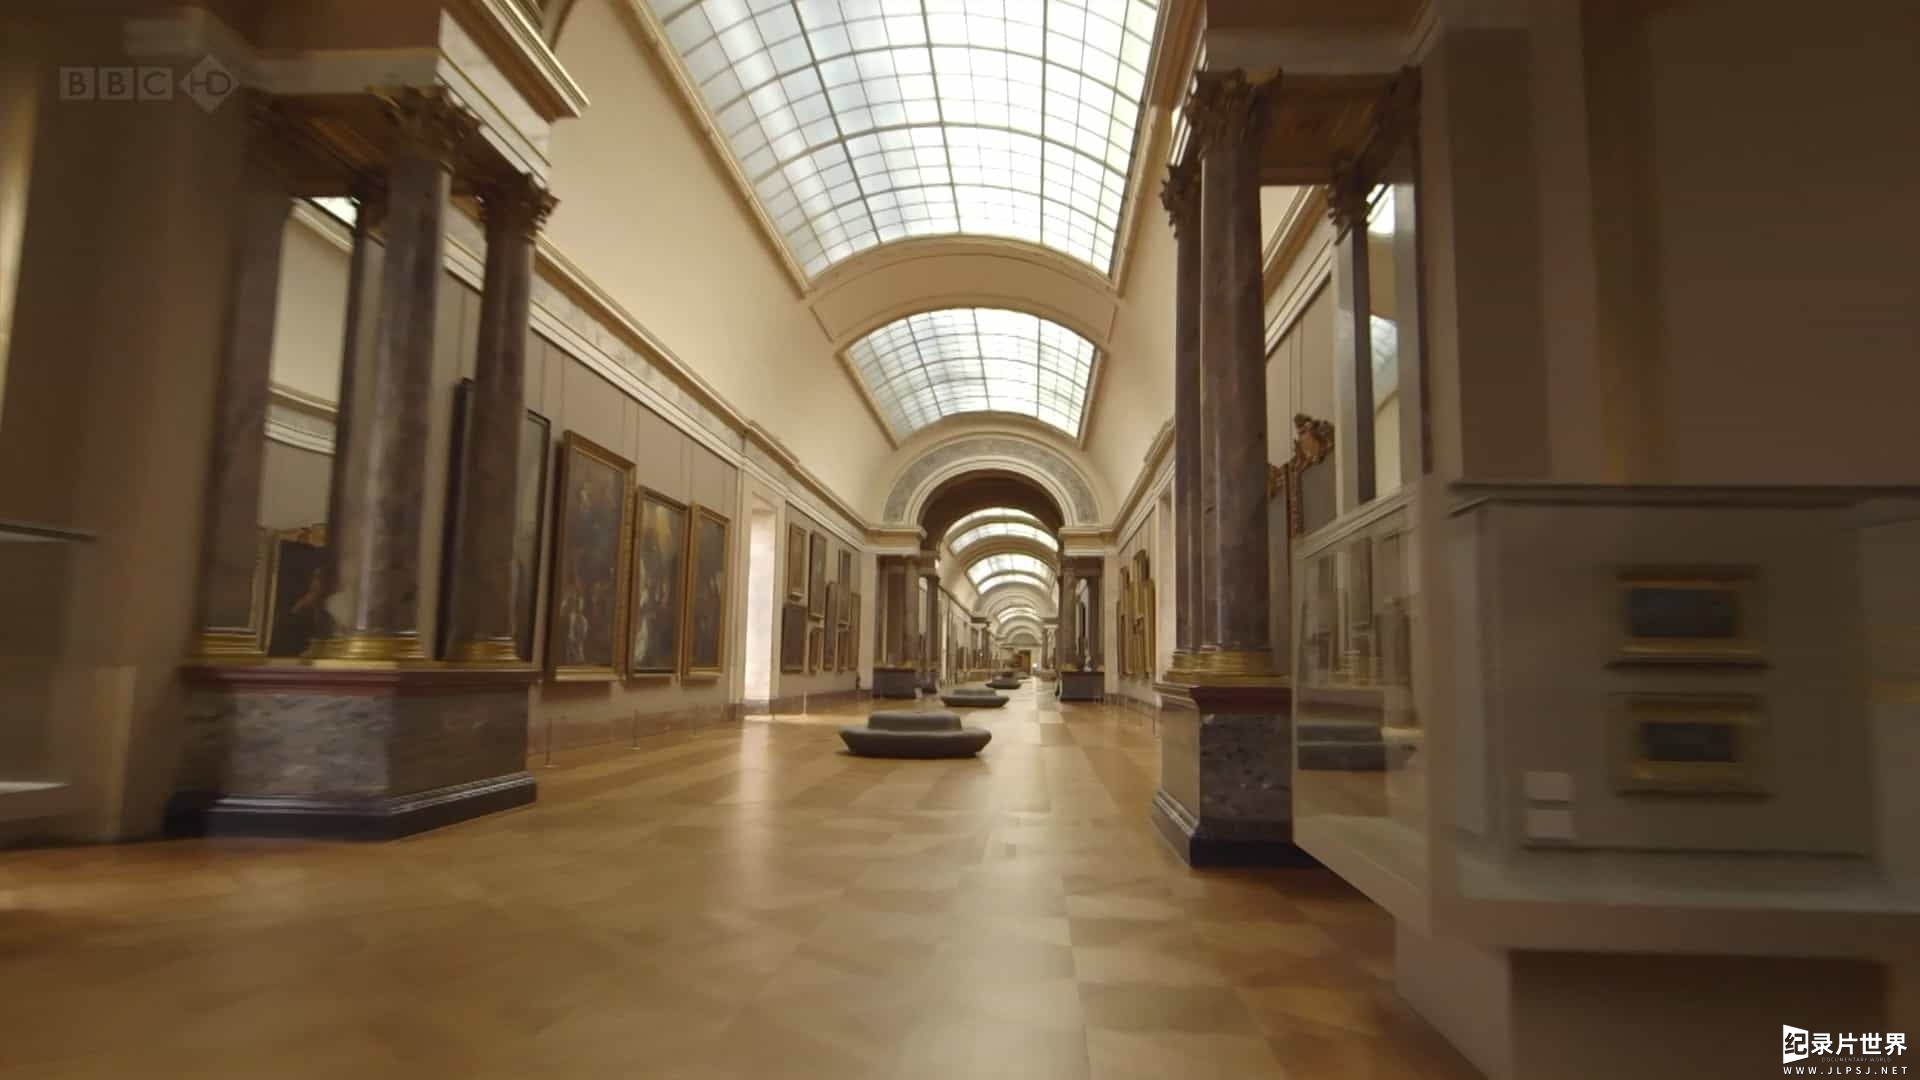 BBC纪录片《卢浮宫的珍宝 Treasures of the Louvre 2013》全1集